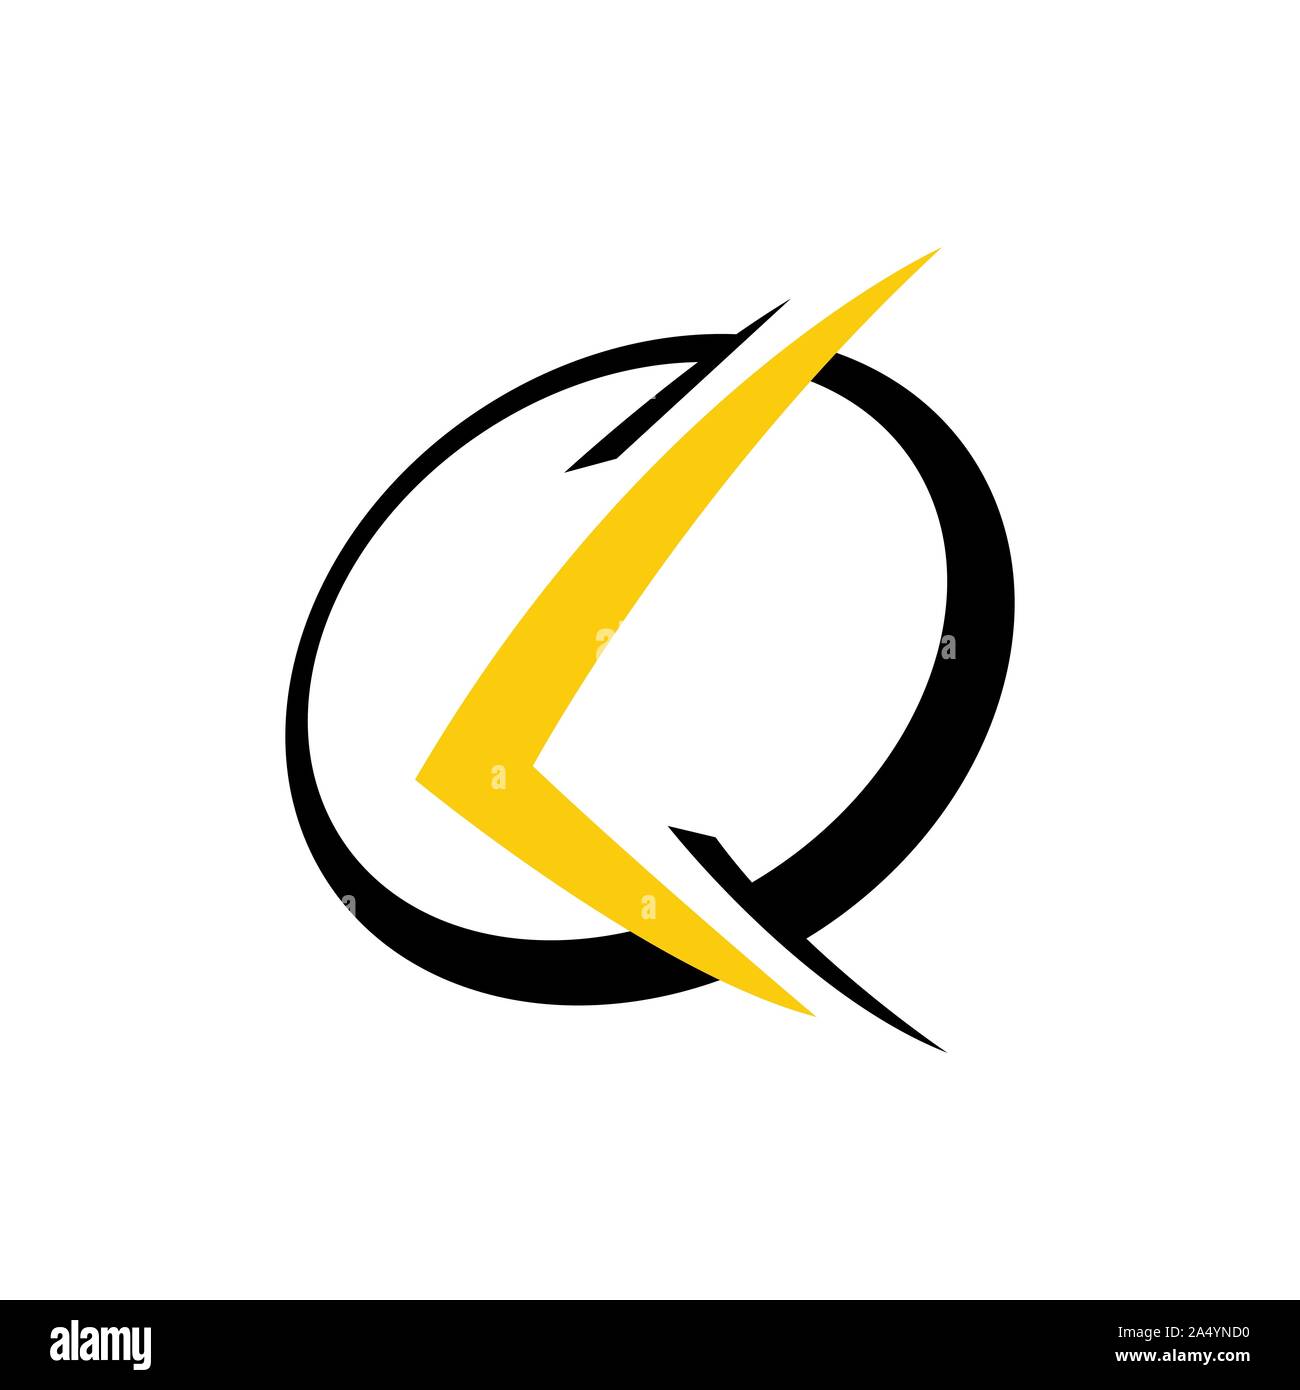 Sporty lettera iniziale L logo design vector graphic concept. Moderna lettera L per la tecnologia, web, sport e fitness logo. Illustrazione Vettoriale